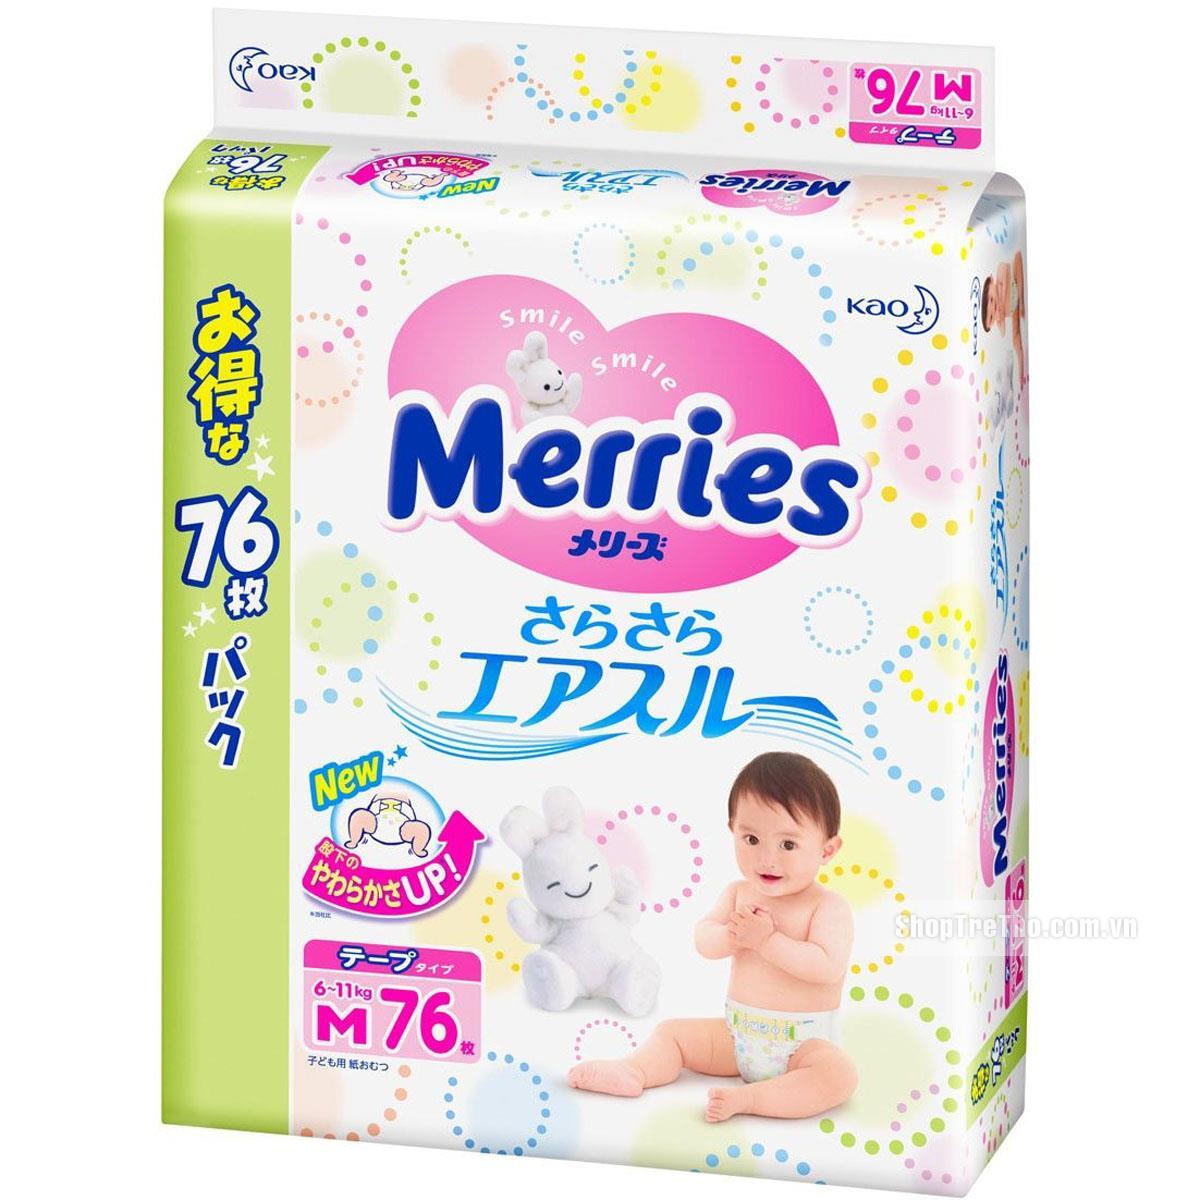 Tã quần cho bé Merries L64 - 9-14kg